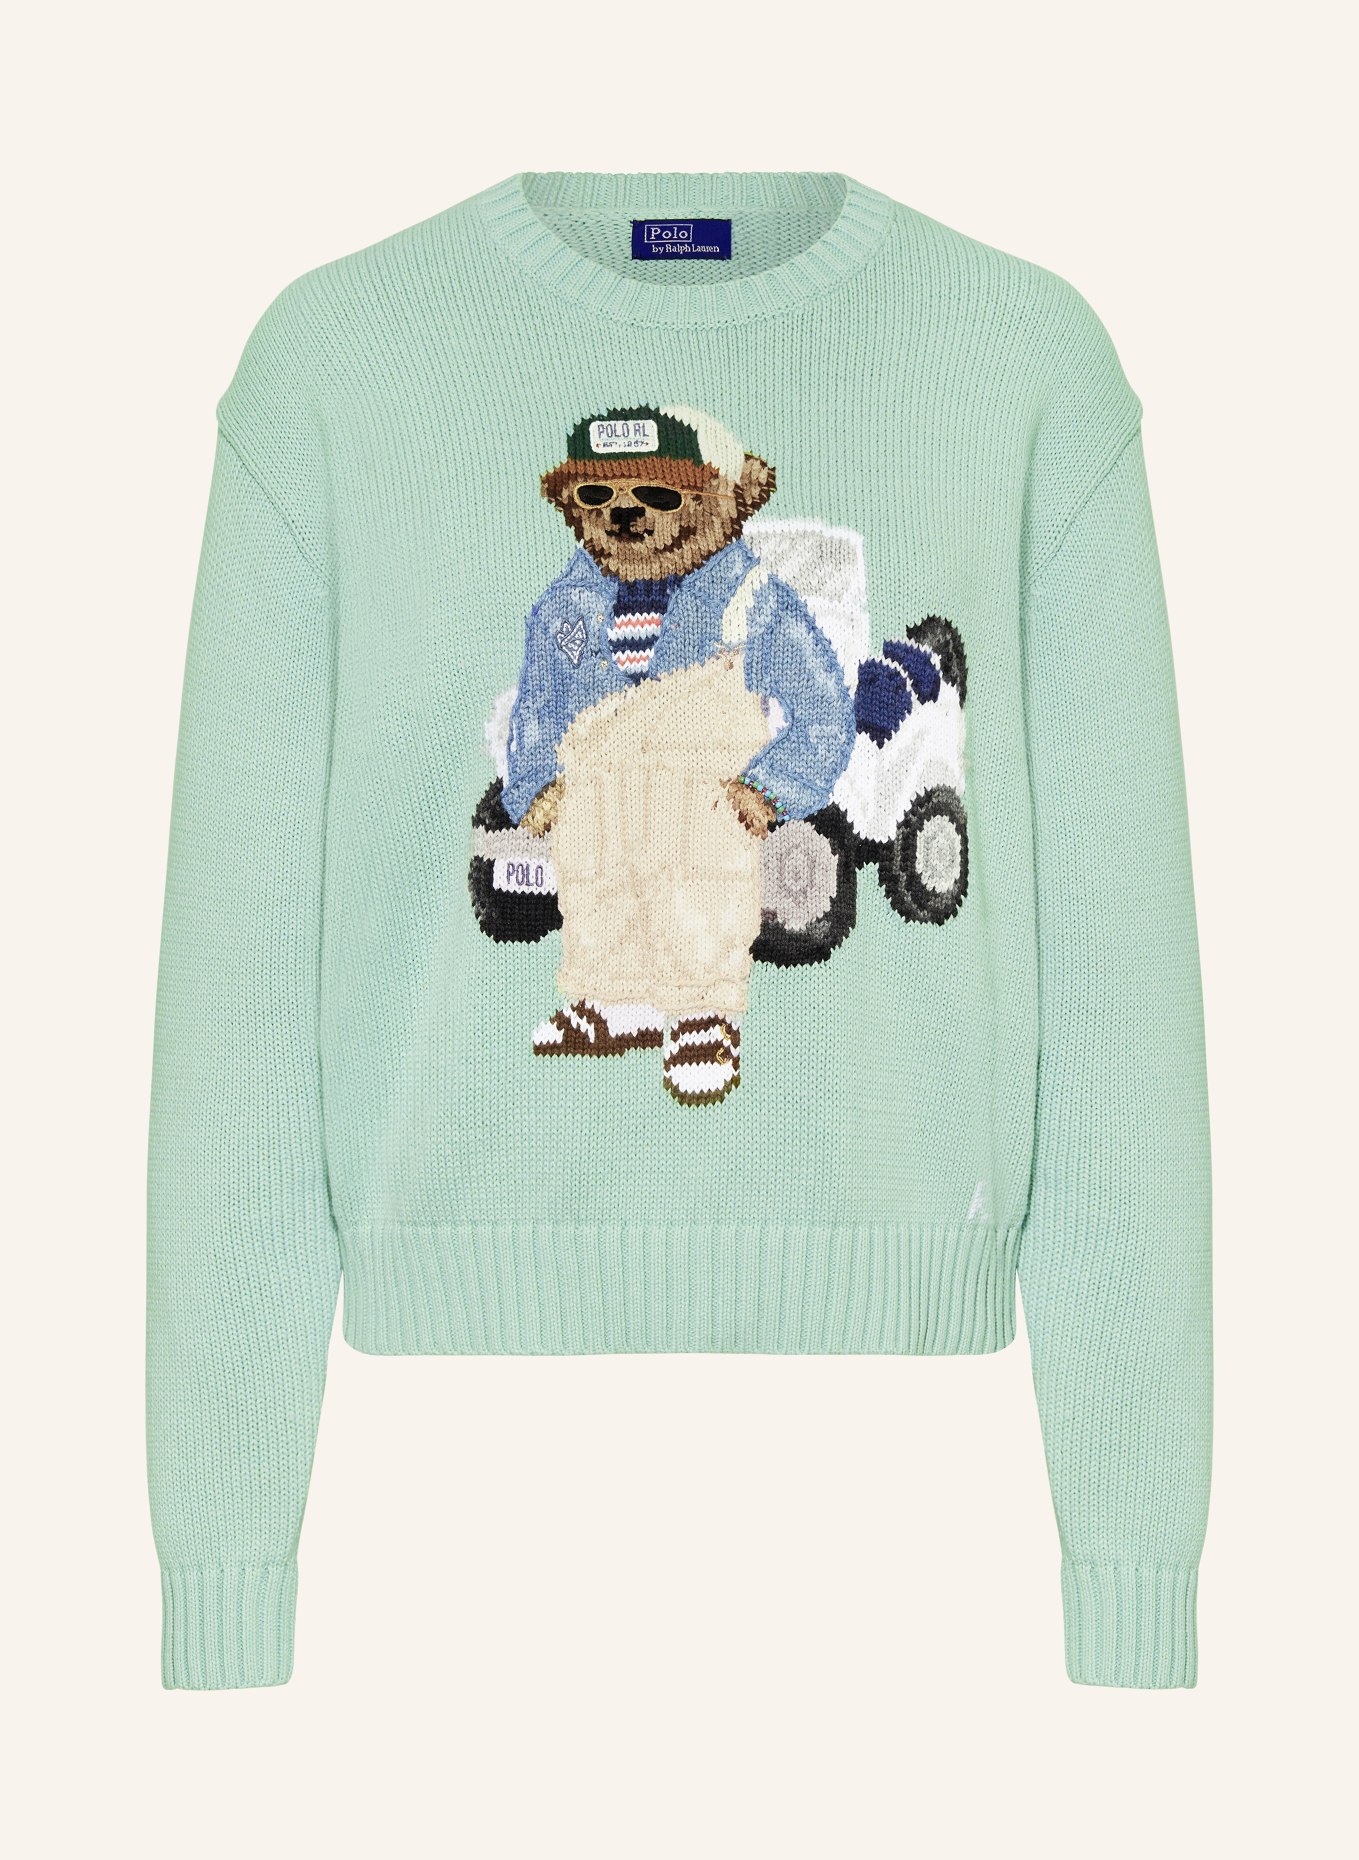 POLO RALPH LAUREN Sweater, Color: MINT/ BEIGE/ BLUE (Image 1)